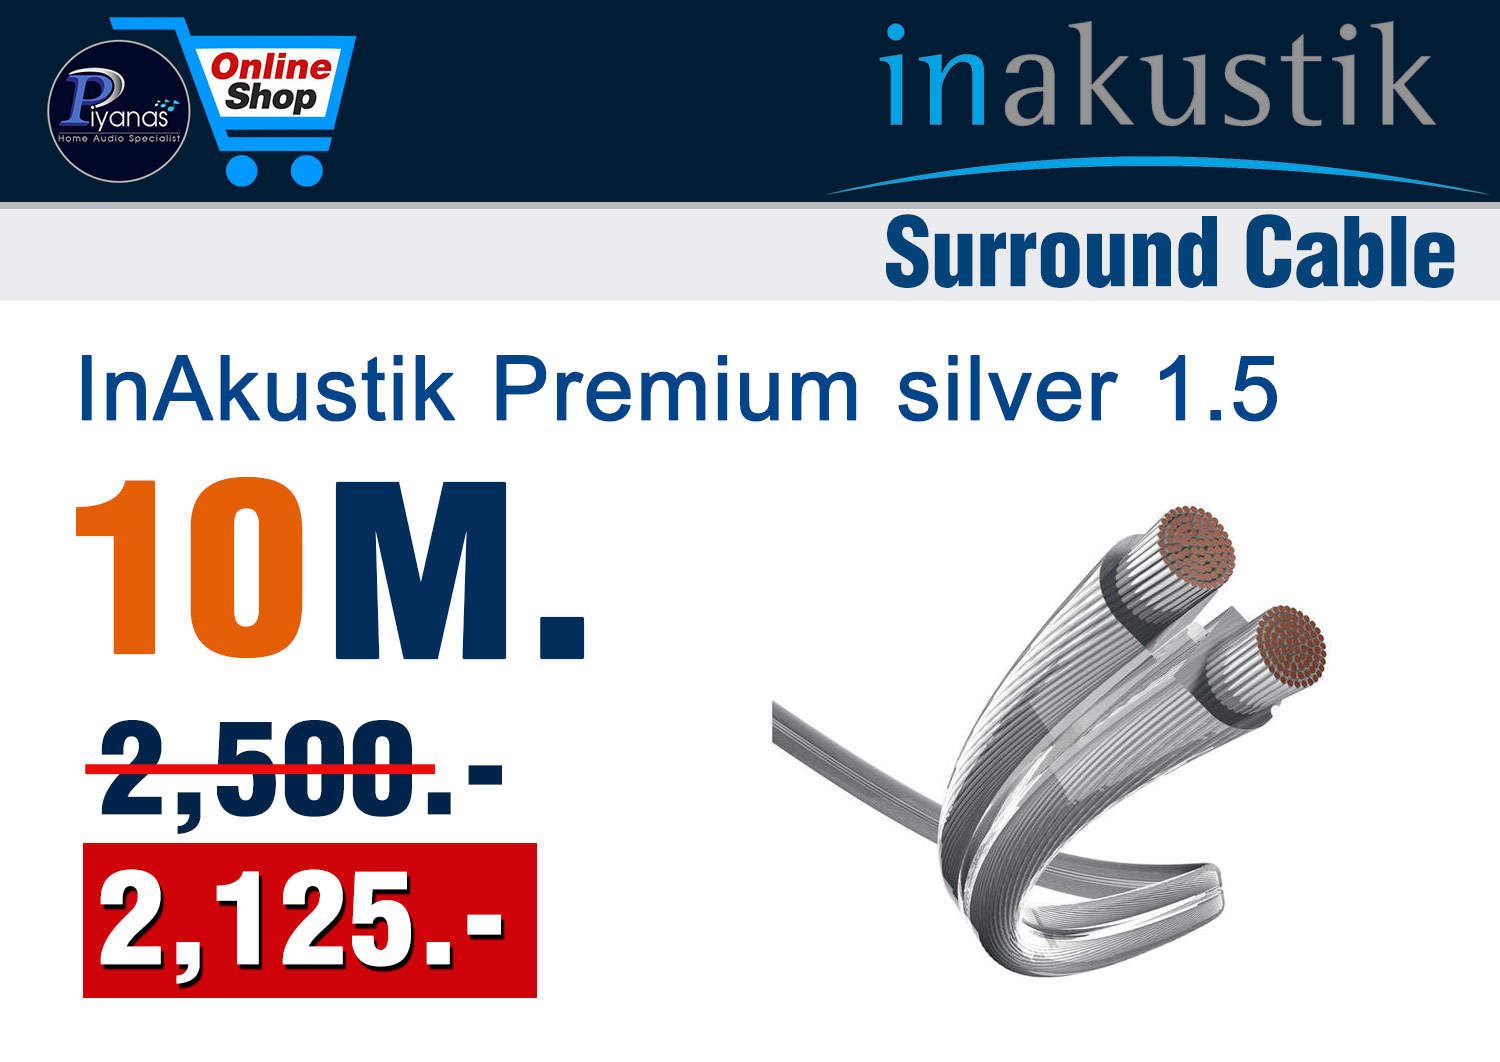 Monitor Premium silver 1.5 (10M.)